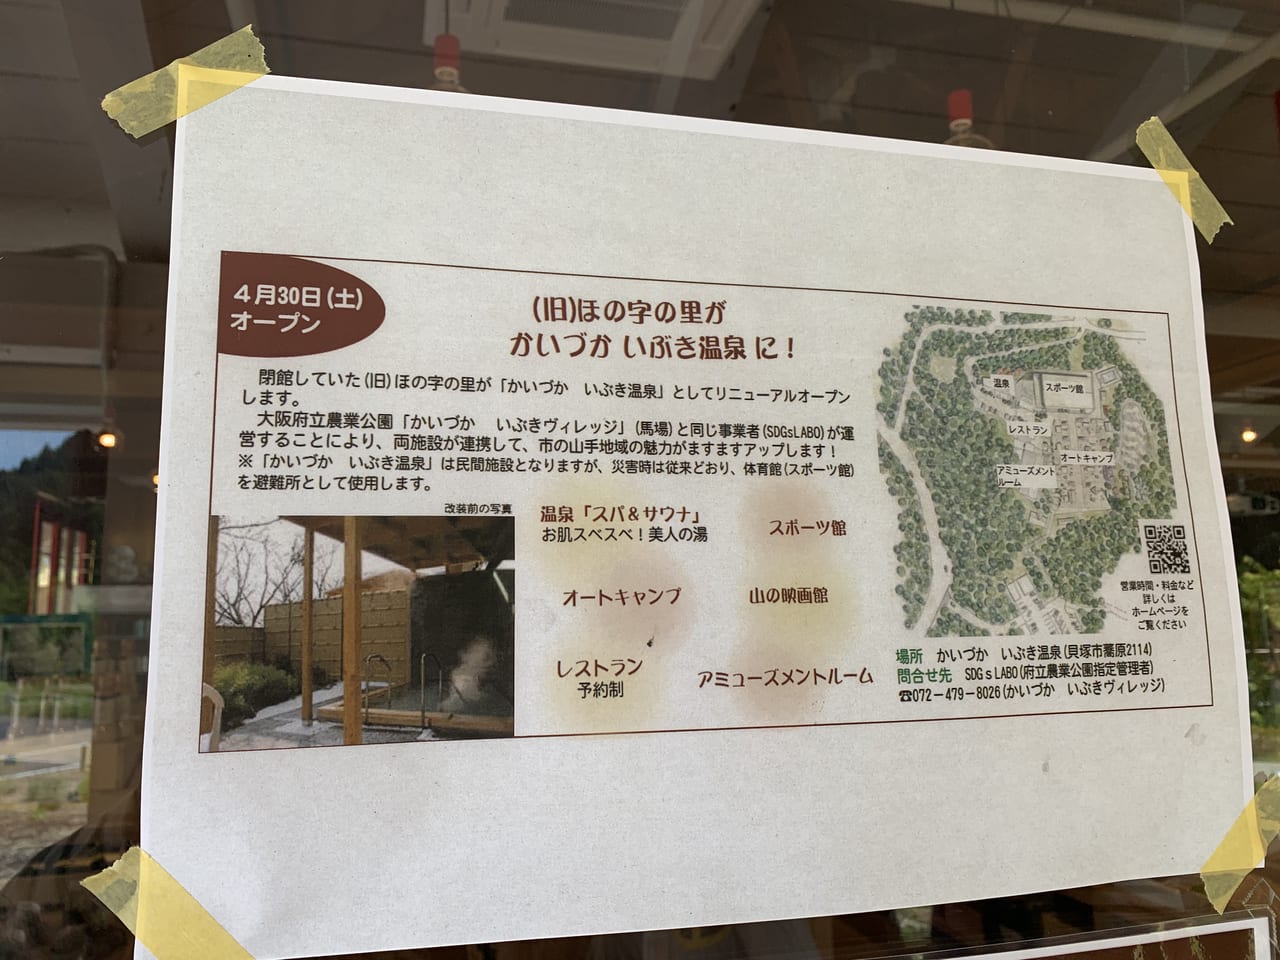 貝塚市 ゆったり過ごそう 4 30 土 には 温泉もオープンしましたよ 号外net 岸和田市 貝塚市